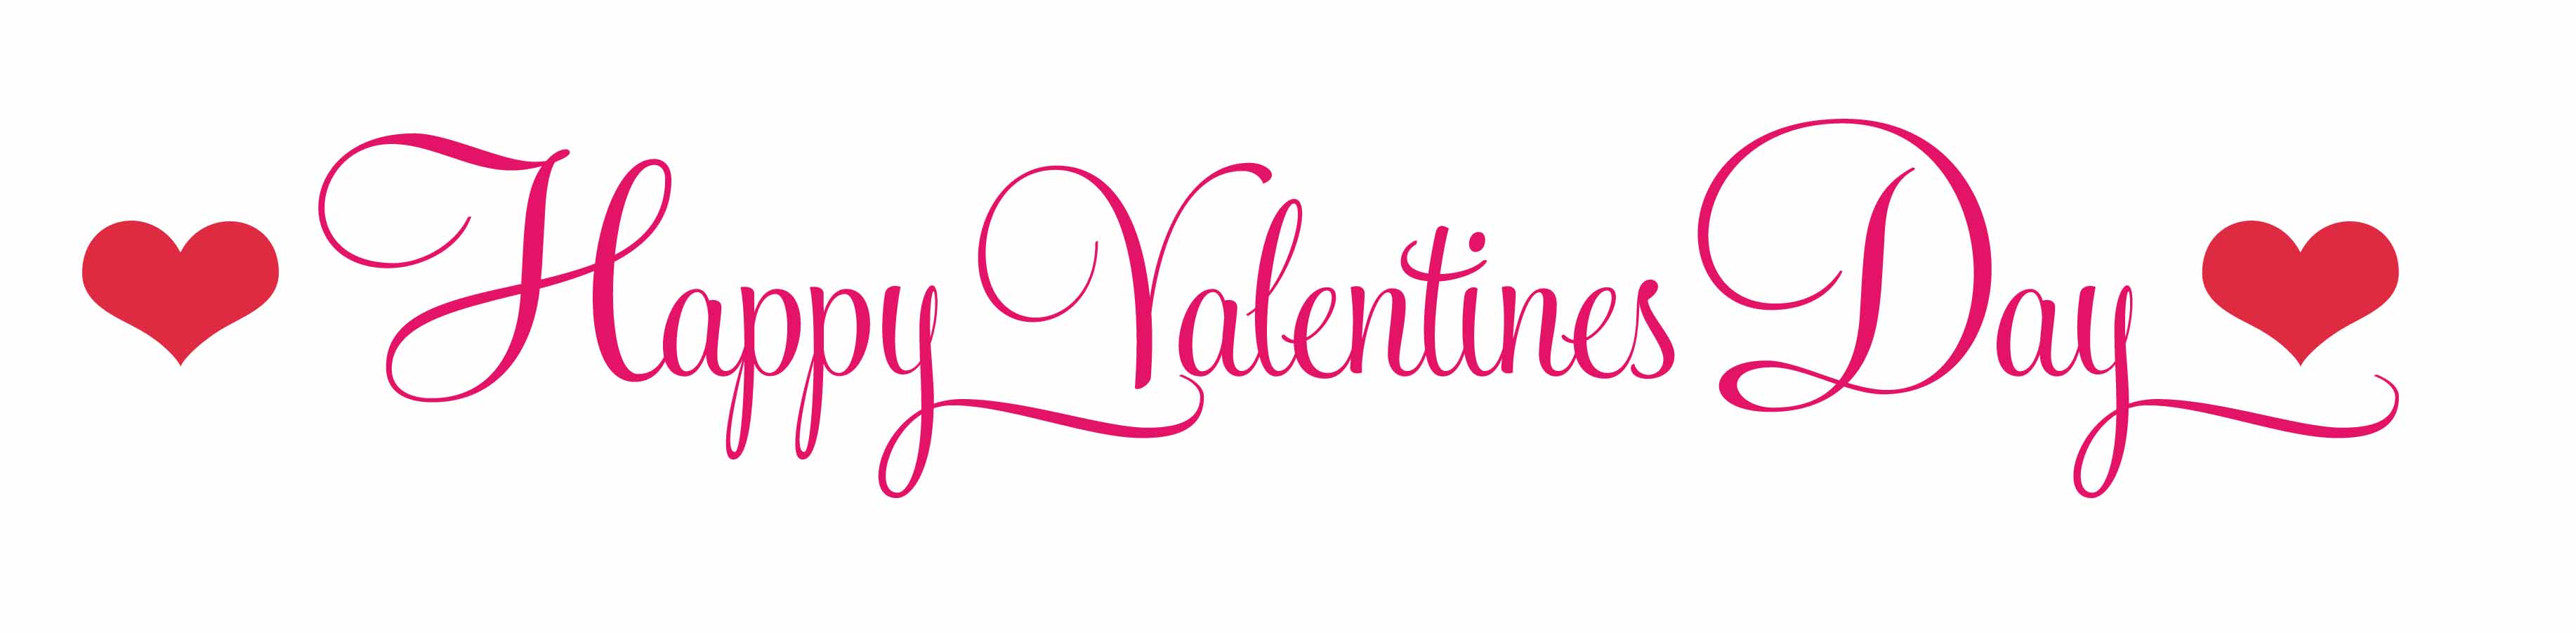 valentine word clip art - photo #45